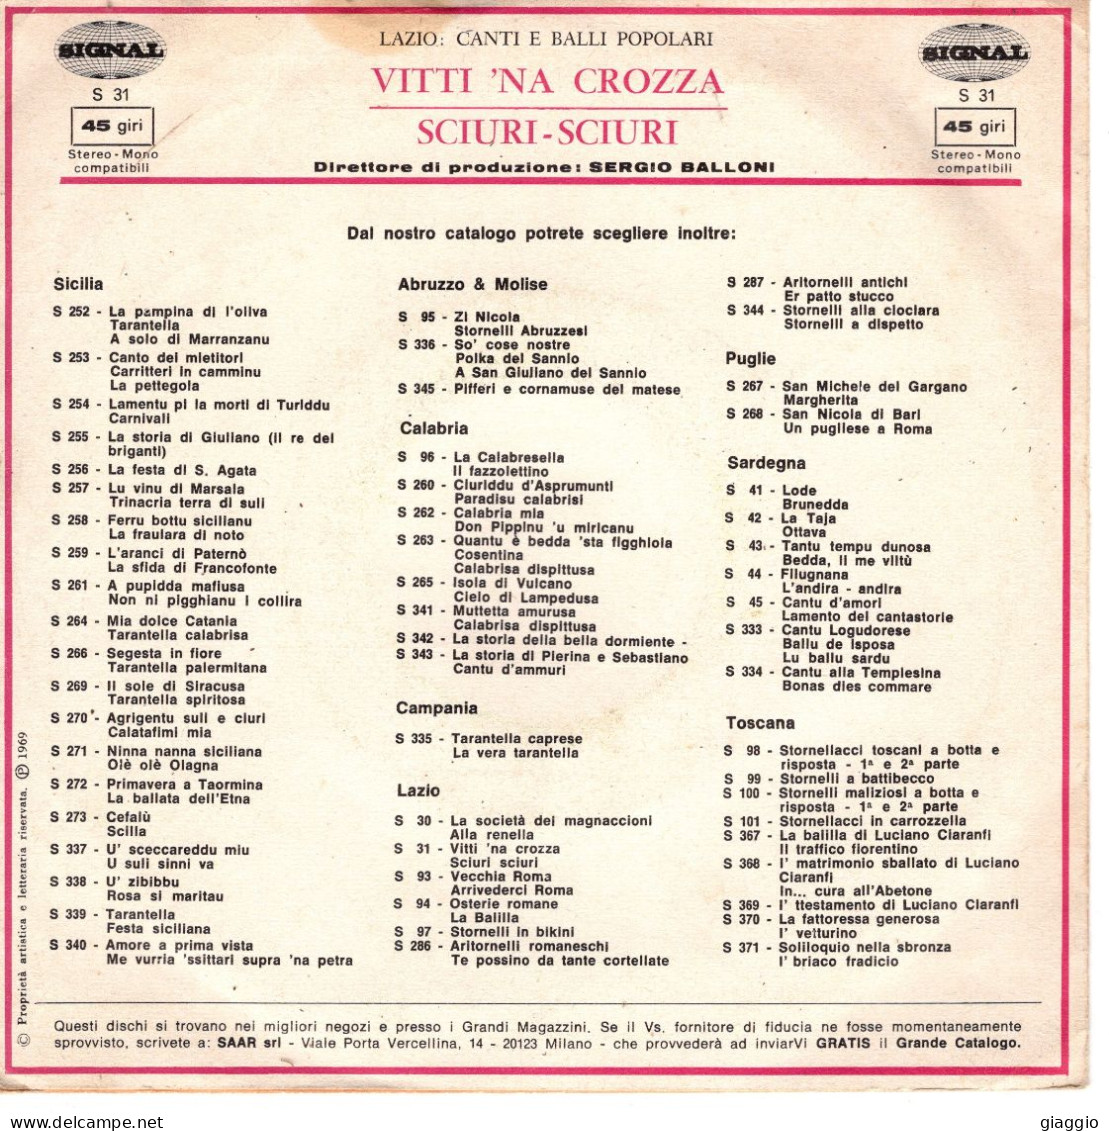 °°° 546) 45 GIRI - LUISA & GABRIELLA - VITTI NA CROZZA / SCIURI SCIURI °°° - Autres - Musique Italienne